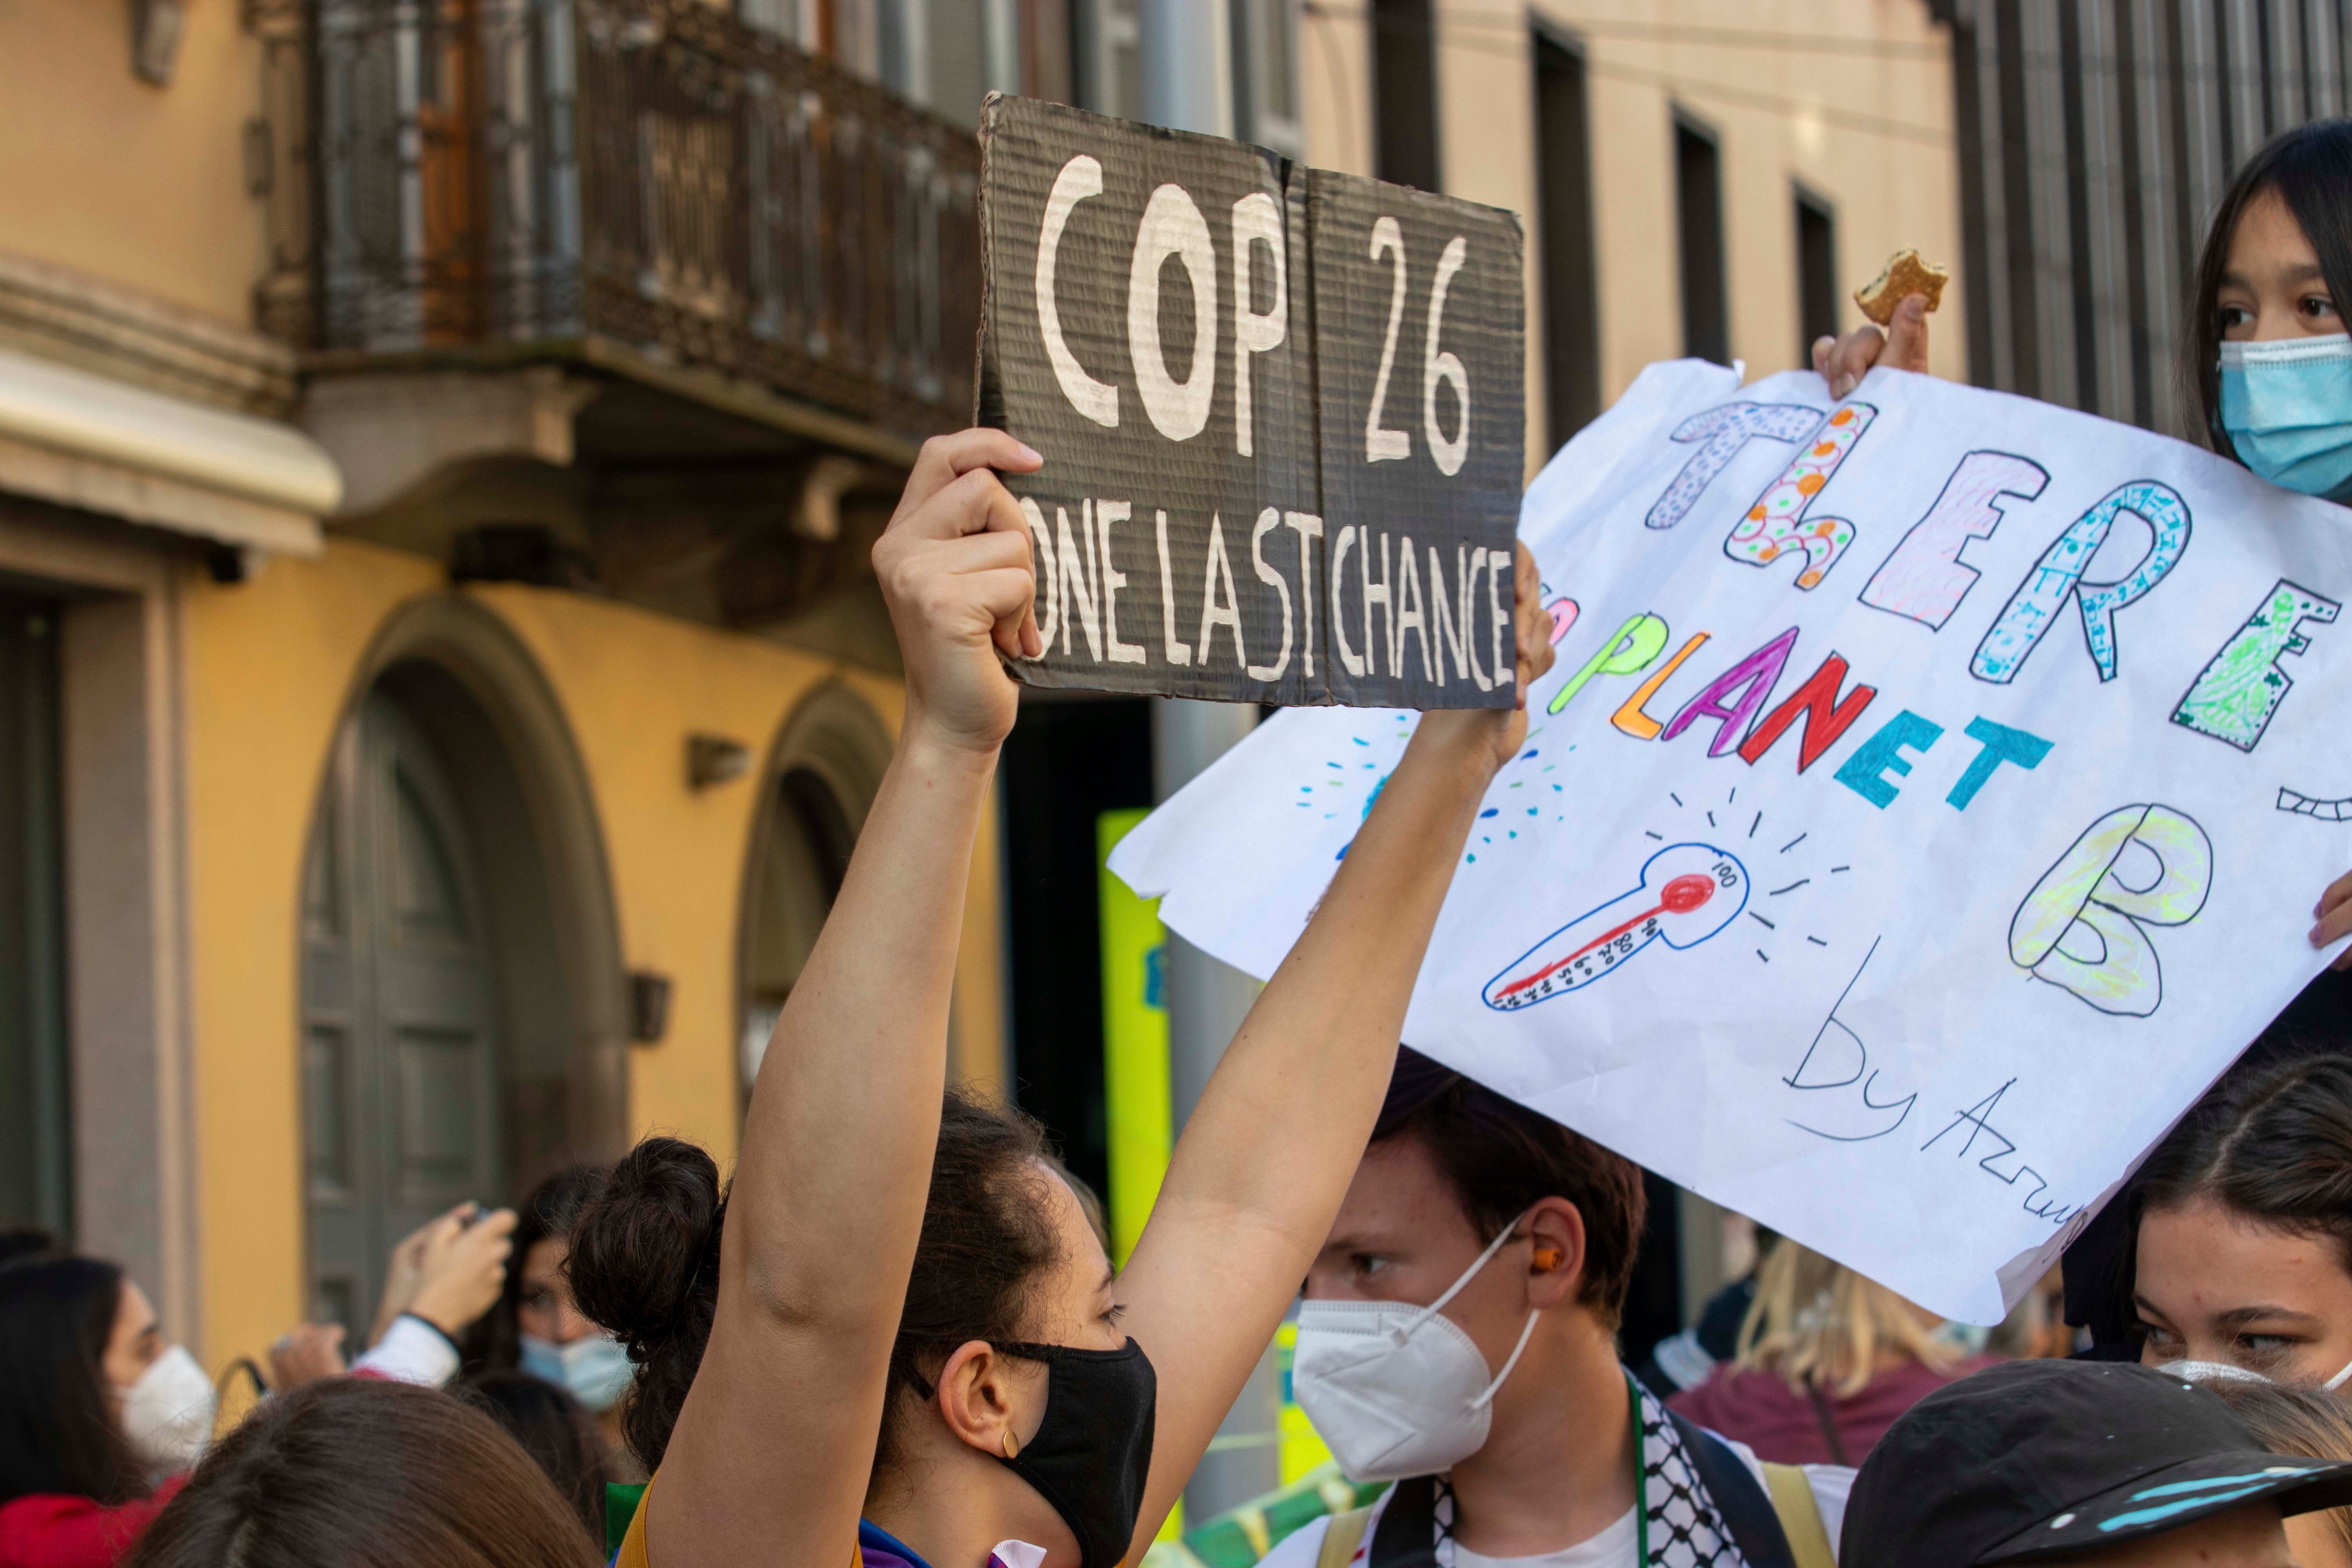 1 октября 2021 года по случаю Молодежного климатического саммита и Предварительного климатического саммита - 26 50,000 человек присоединились к школьной забастовке "Пятницы во имя будущего" в Милане, Италия.